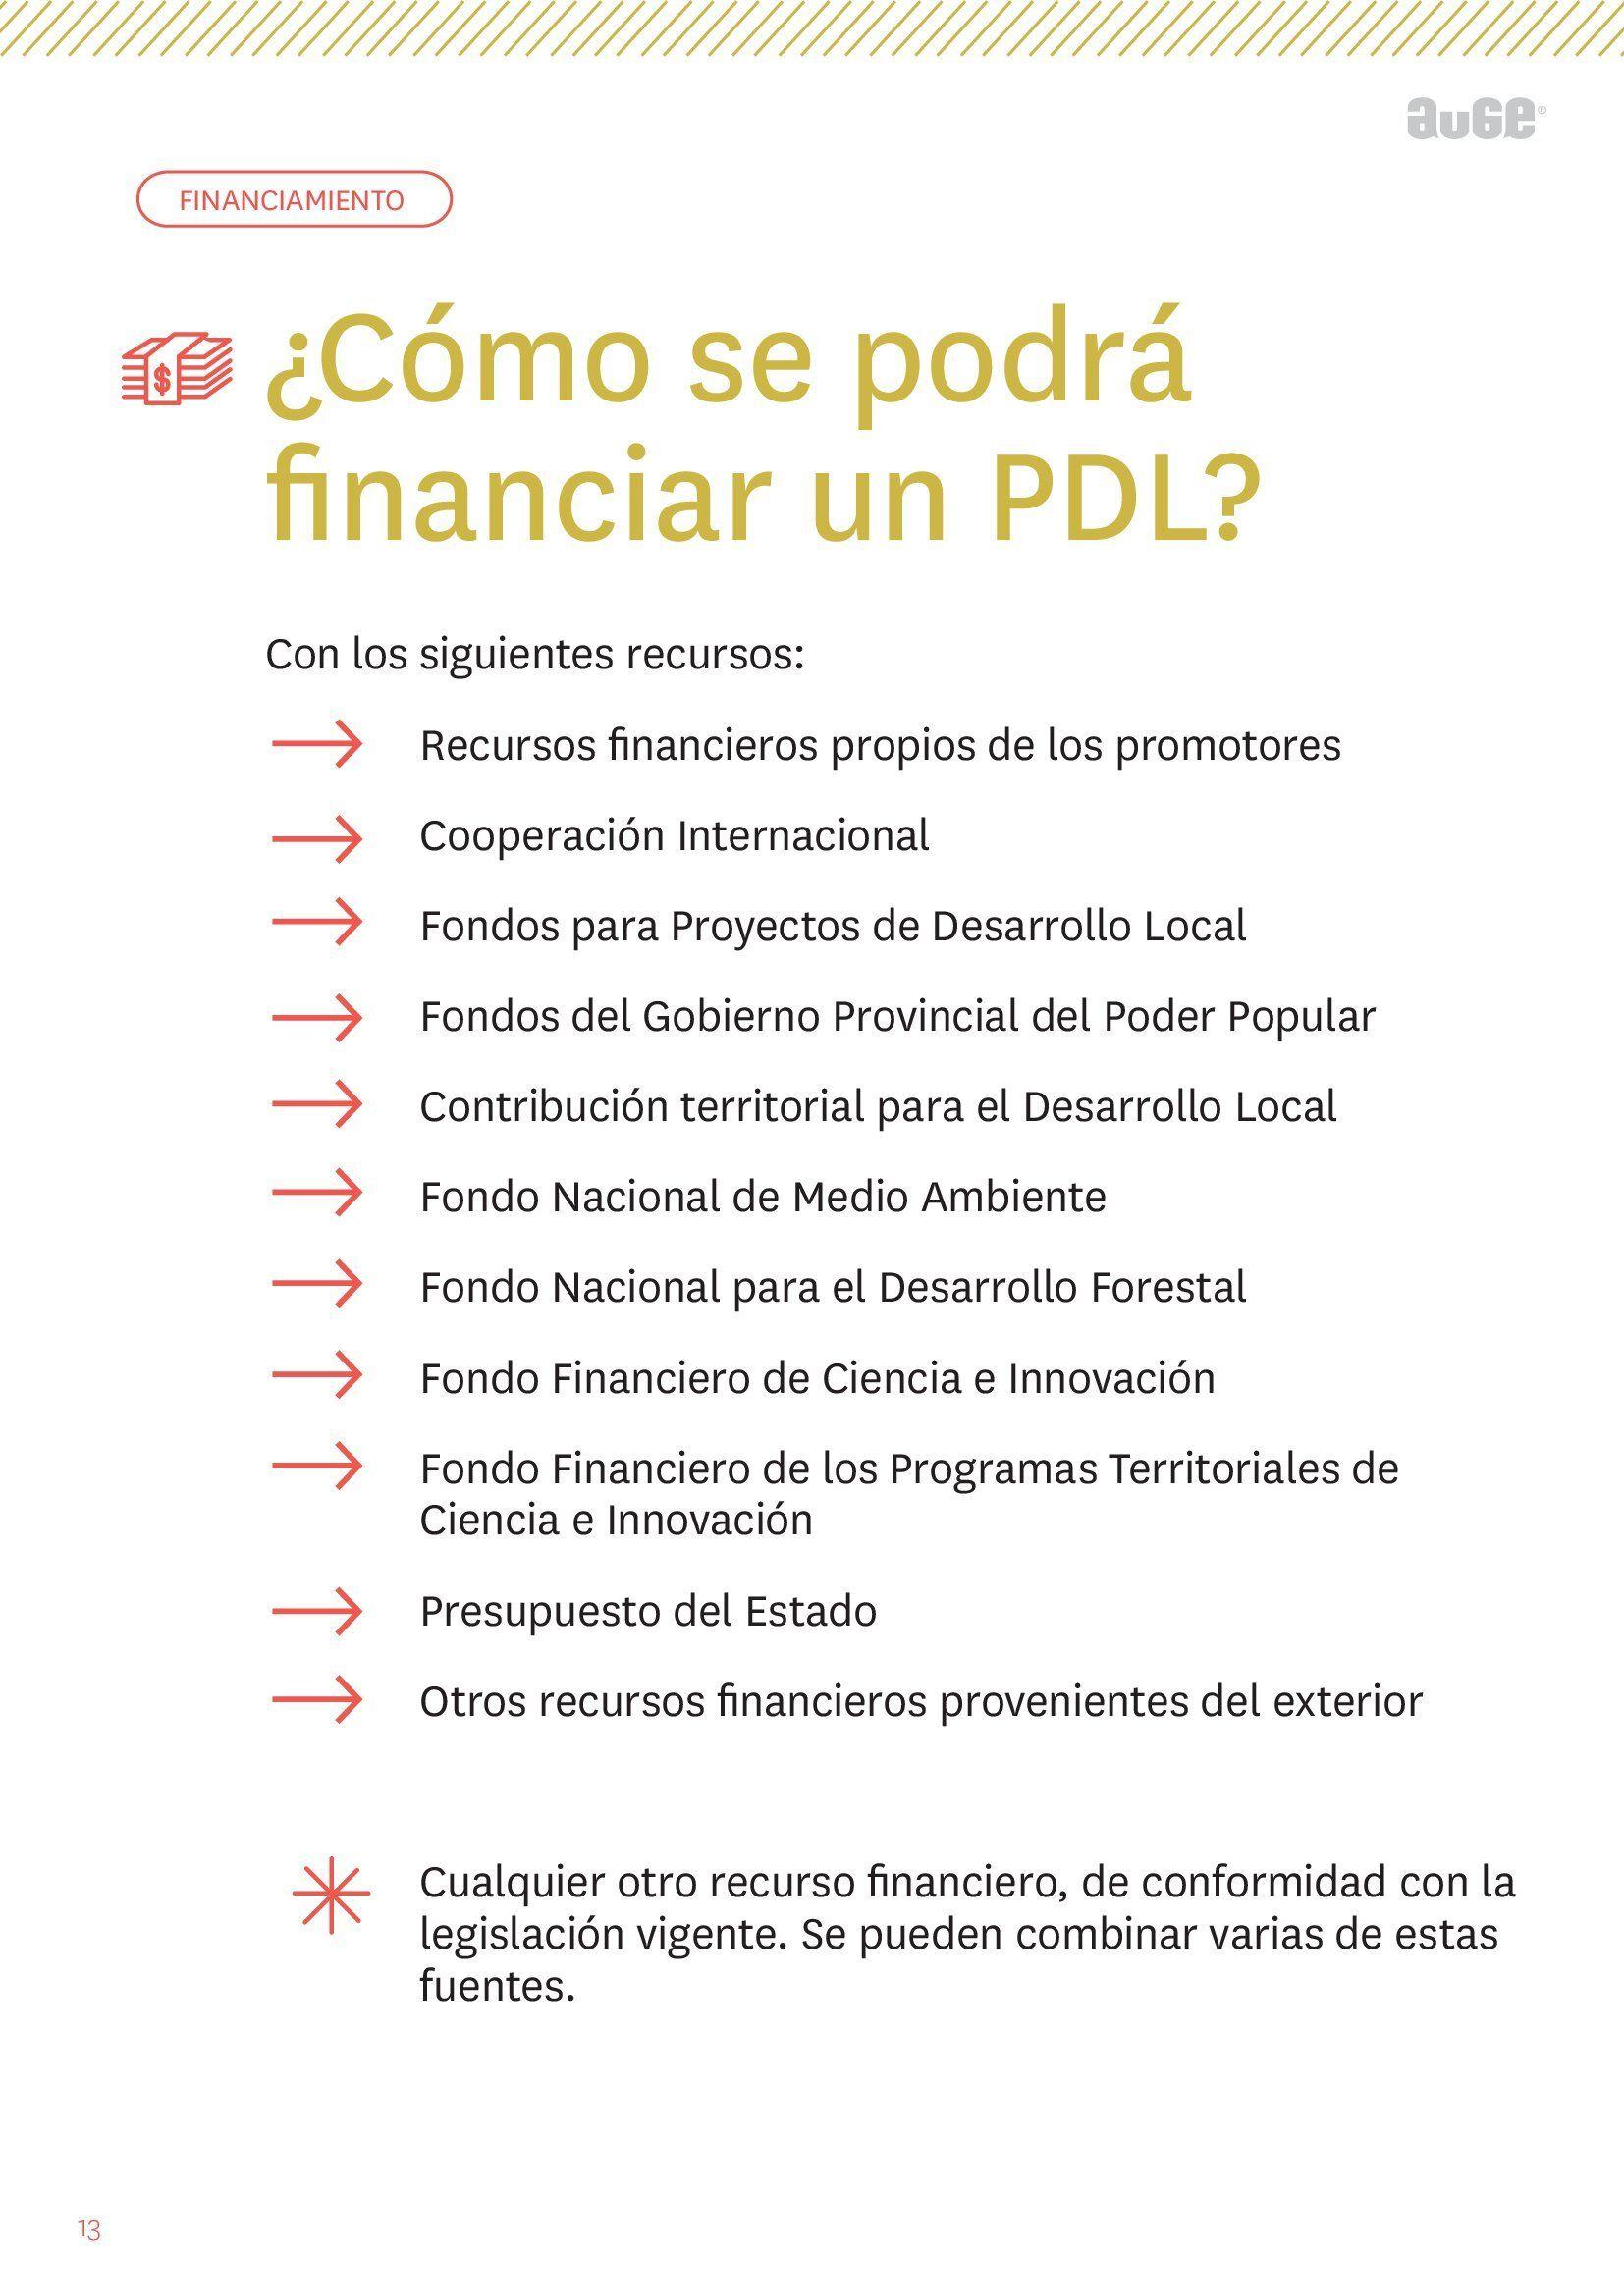 financiar una PDL-AUGE-infografia.jpg